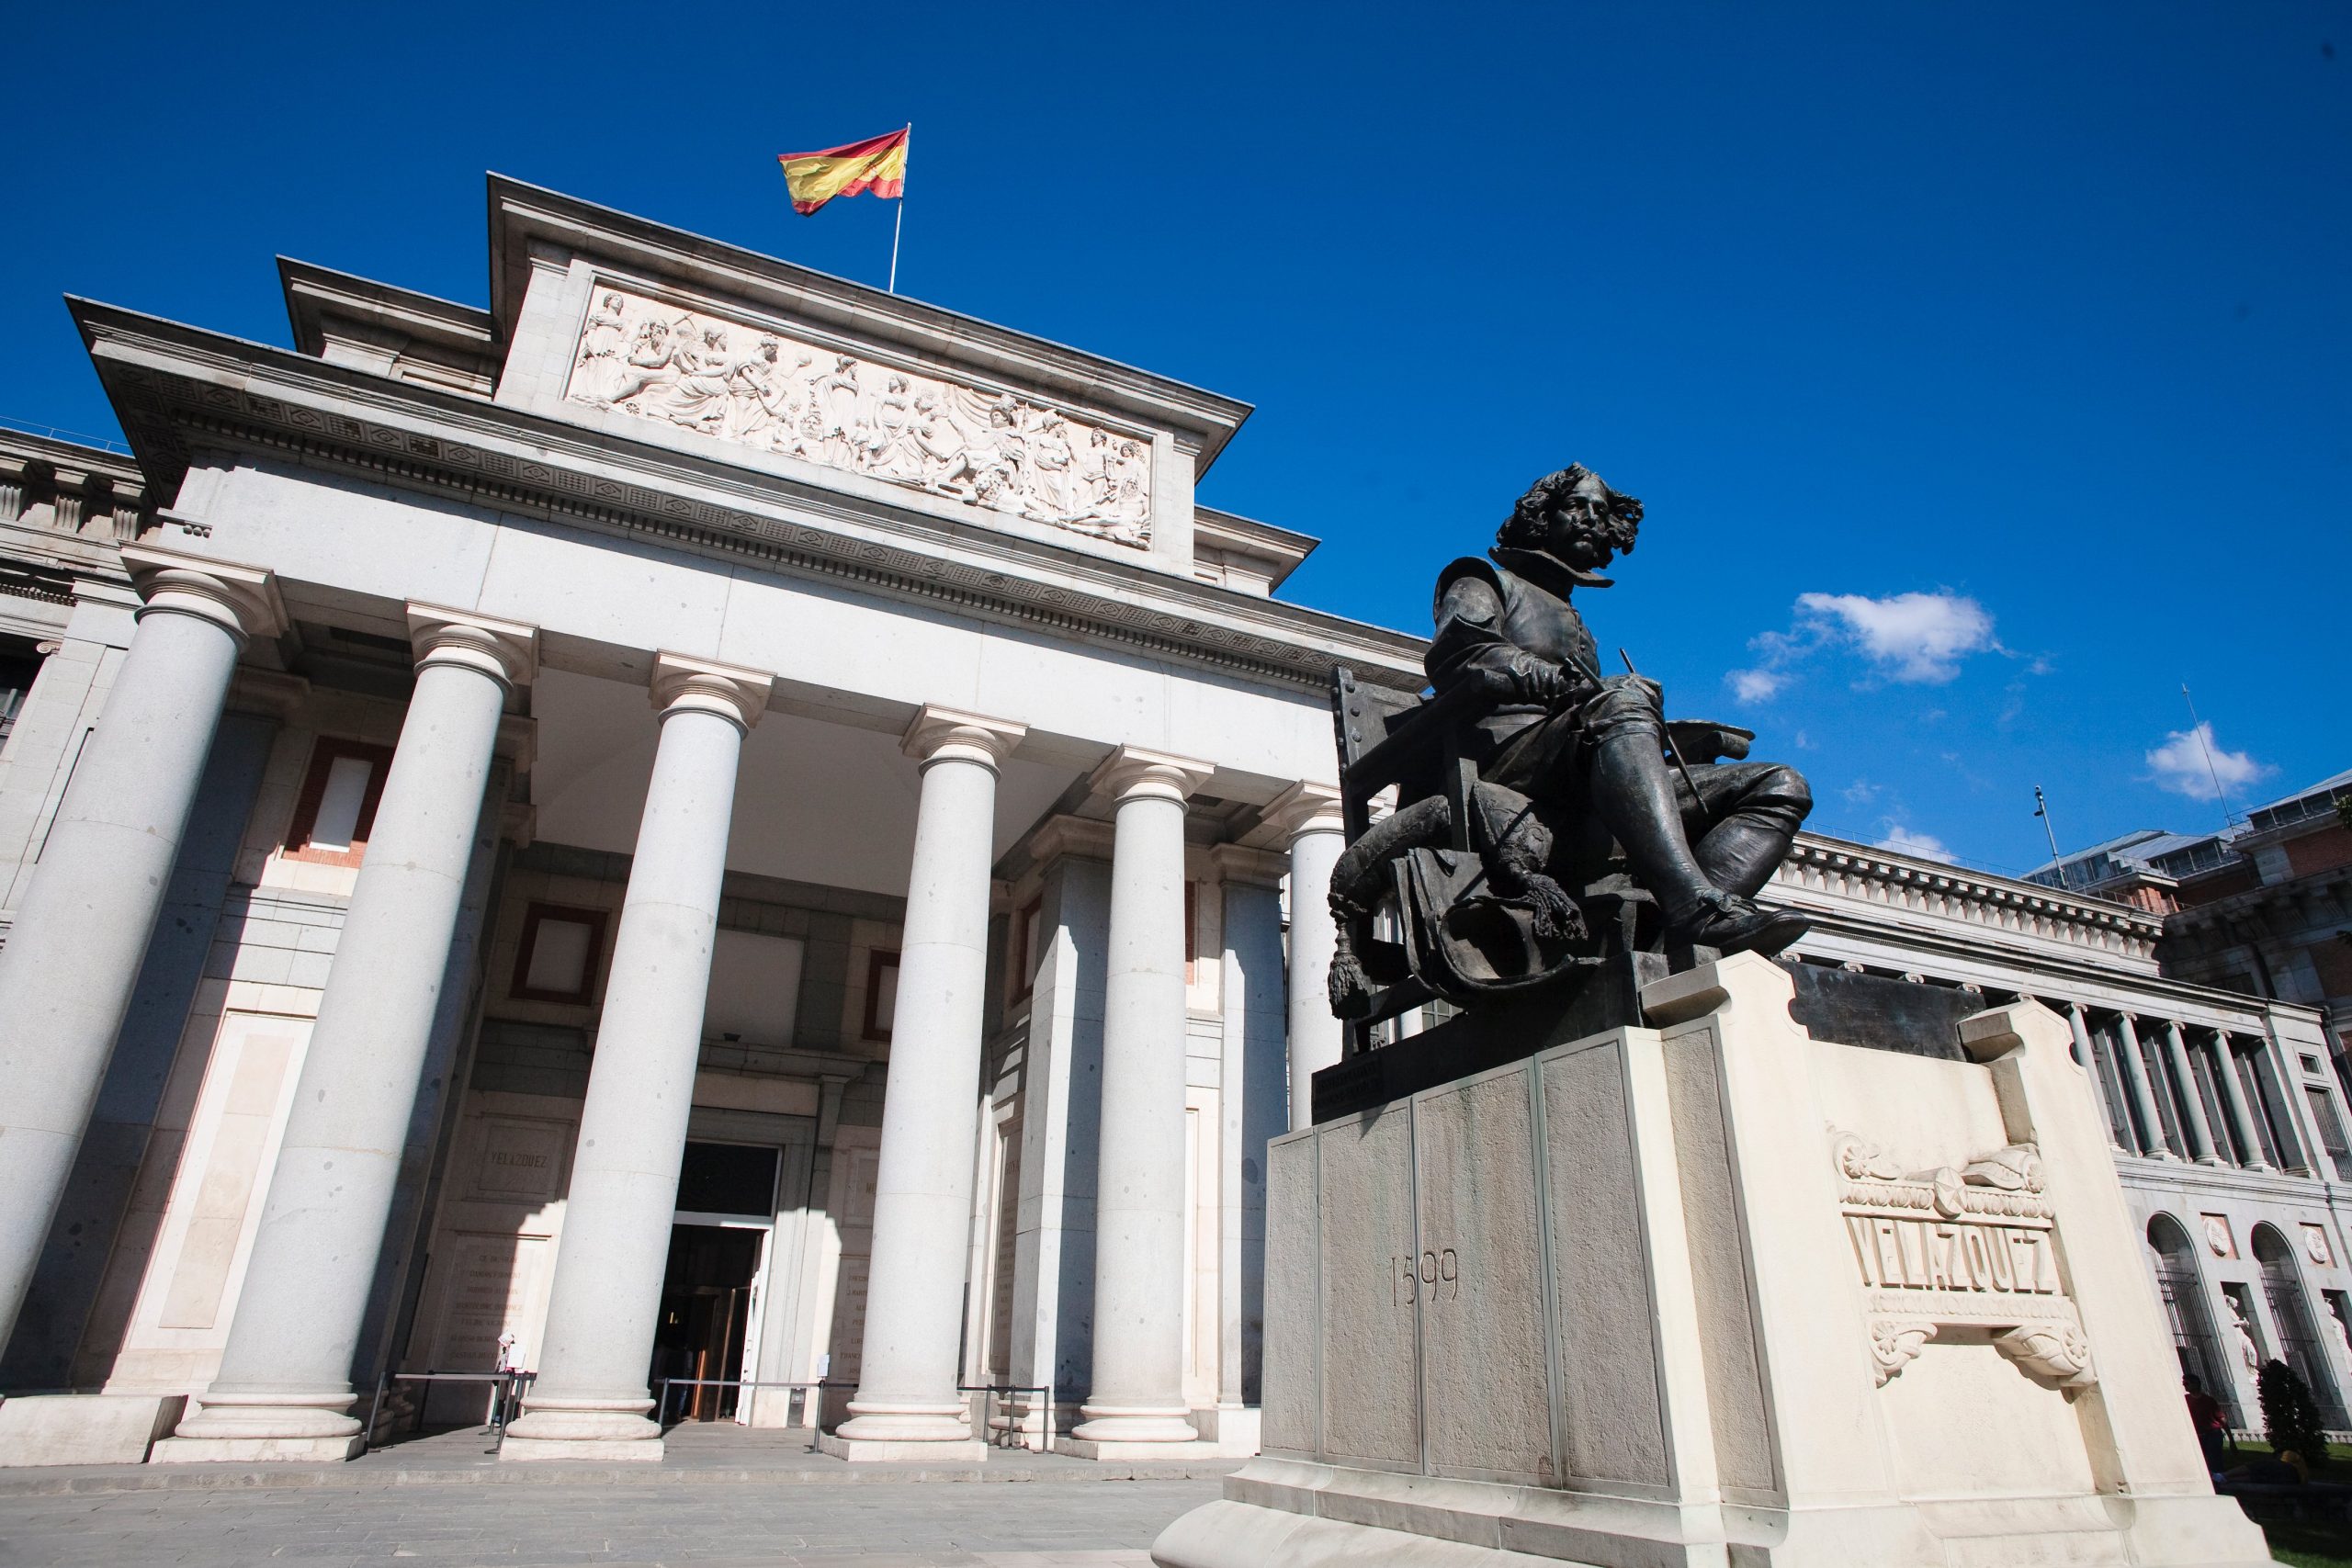 A photo of the exterior of Prado museum.